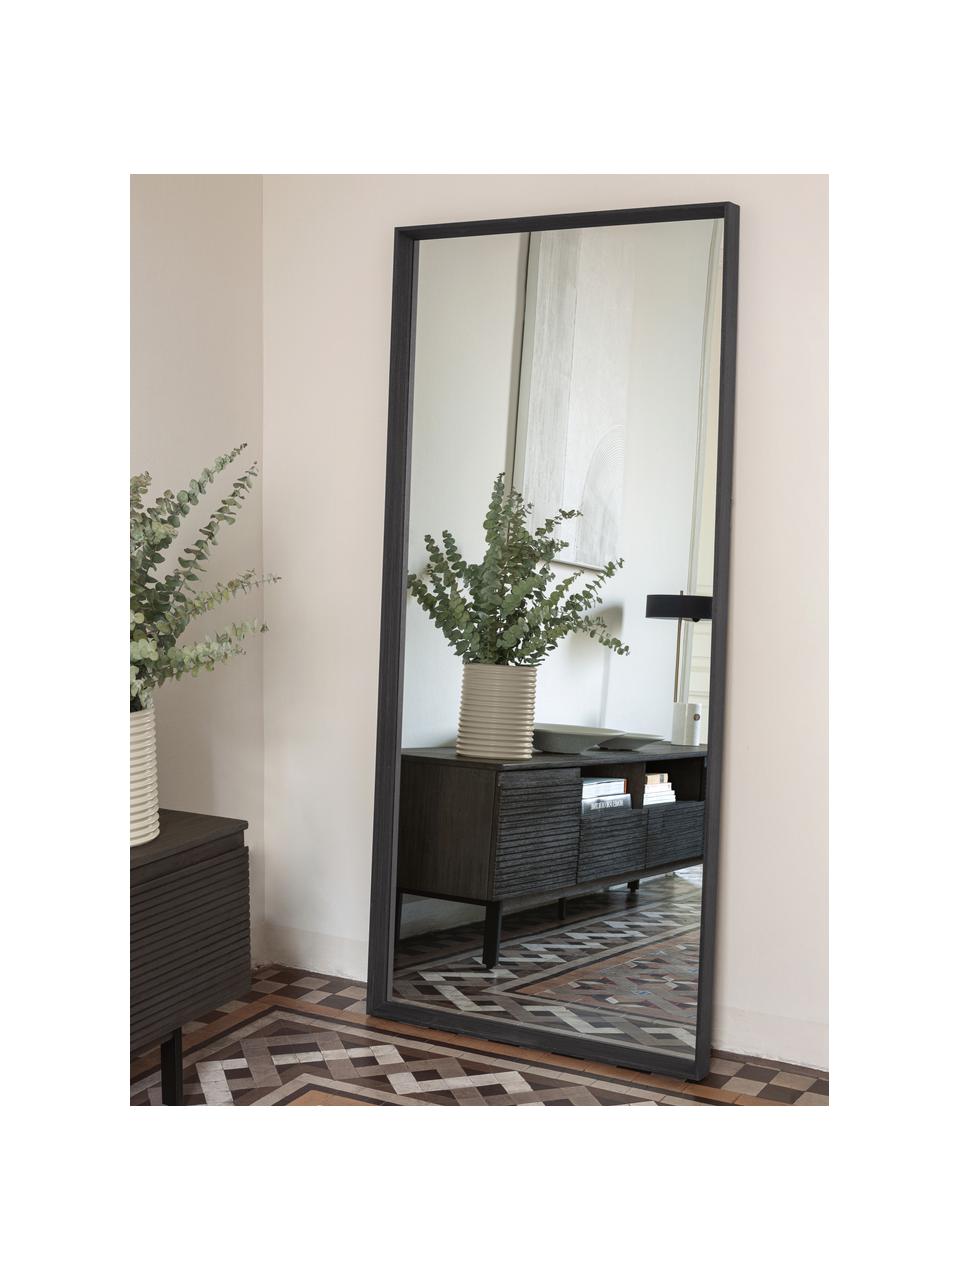 Specchio rettangolare da parete con cornice in legno marrone scuro Nerina, Cornice: legno, Superficie dello specchio: lastra di vetro, Marrone, Larg. 80 x Alt. 180 cm